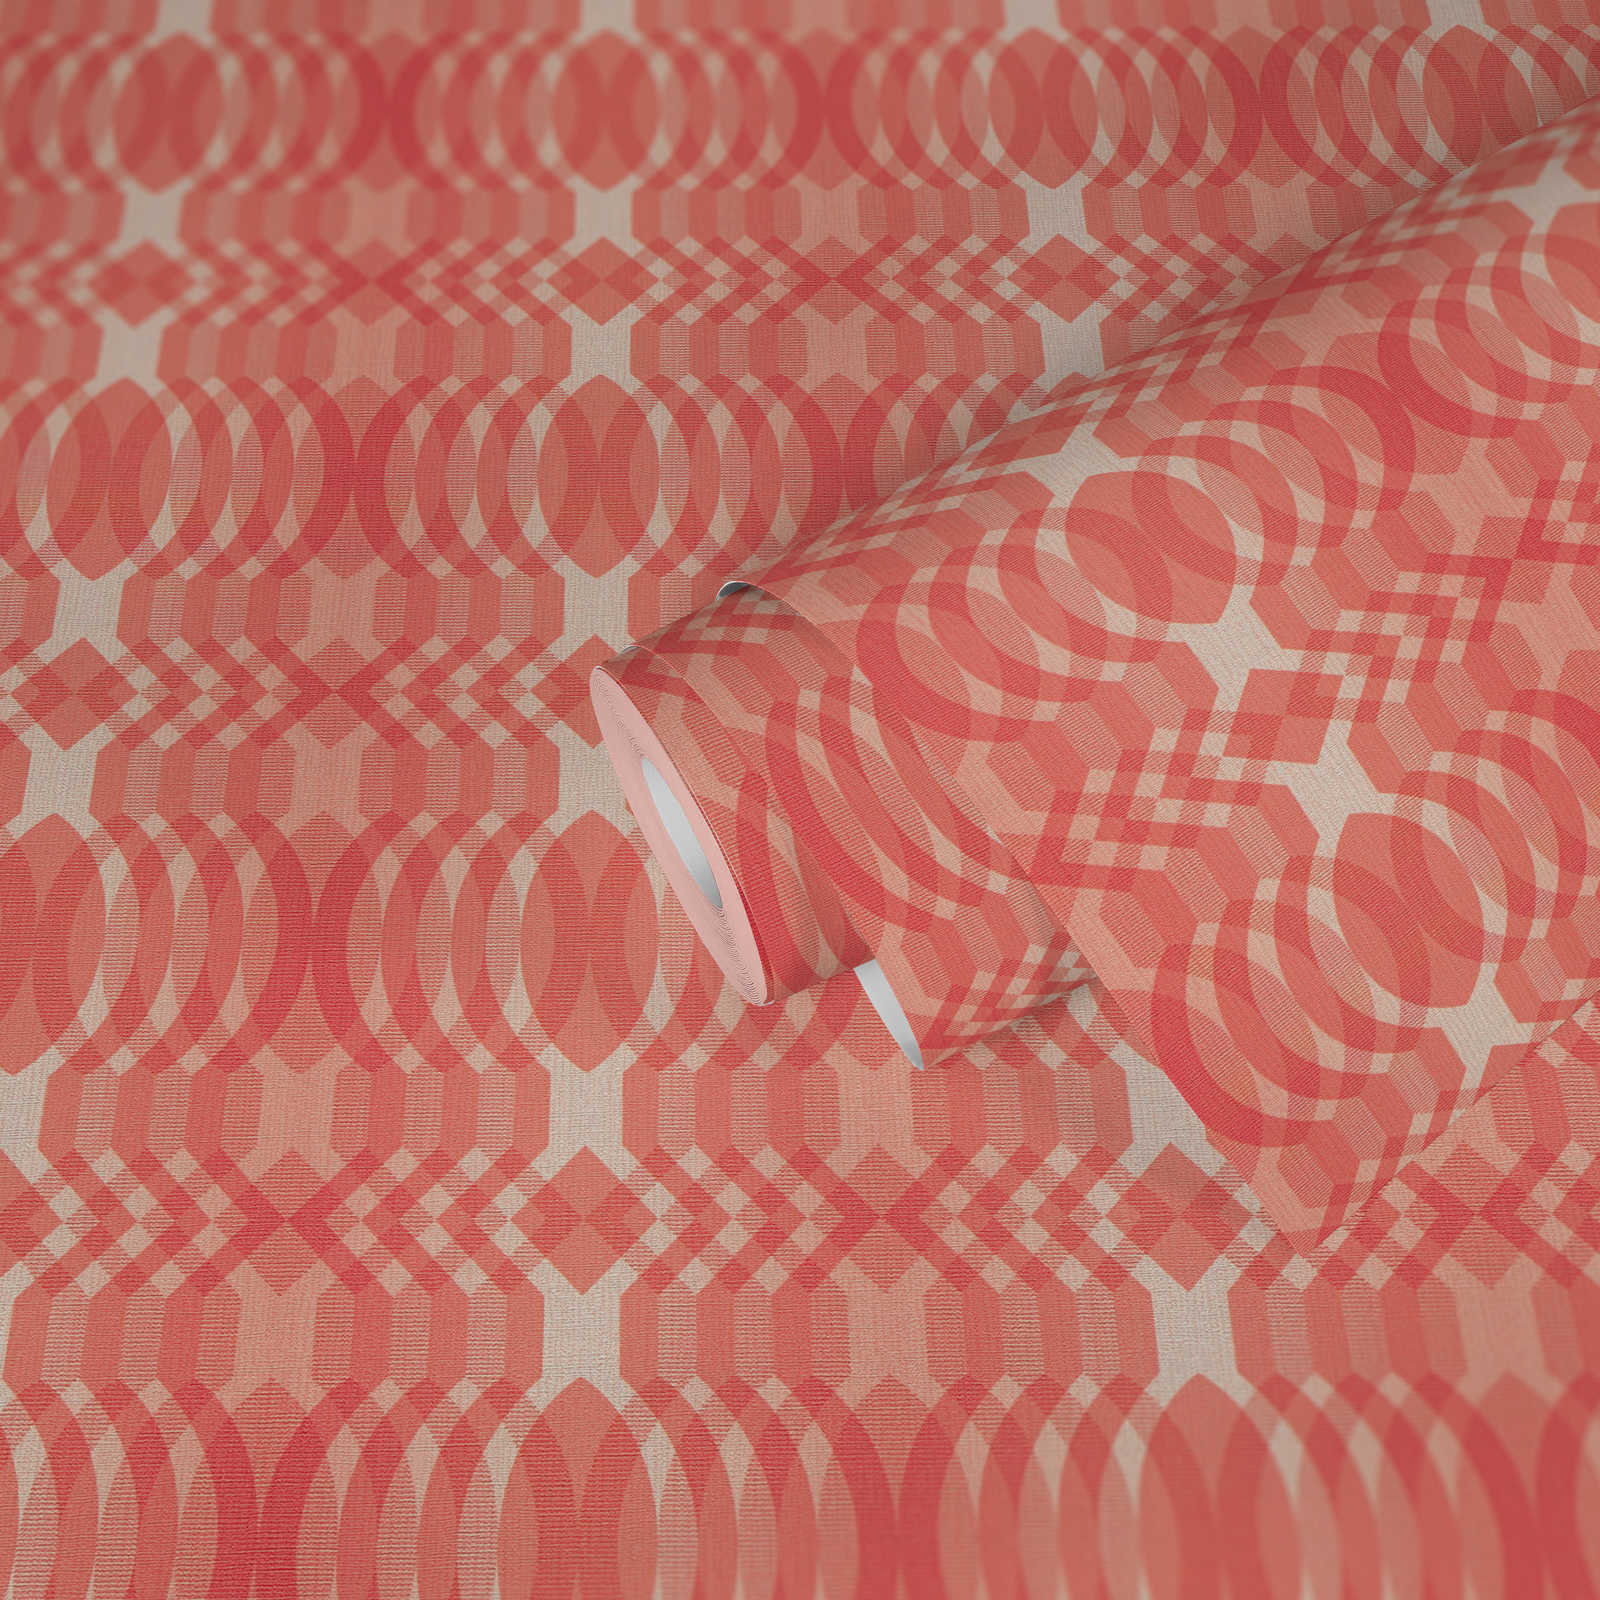             Motifs géométriques sur papier peint intissé de style rétro - rouge, crème, blanc
        